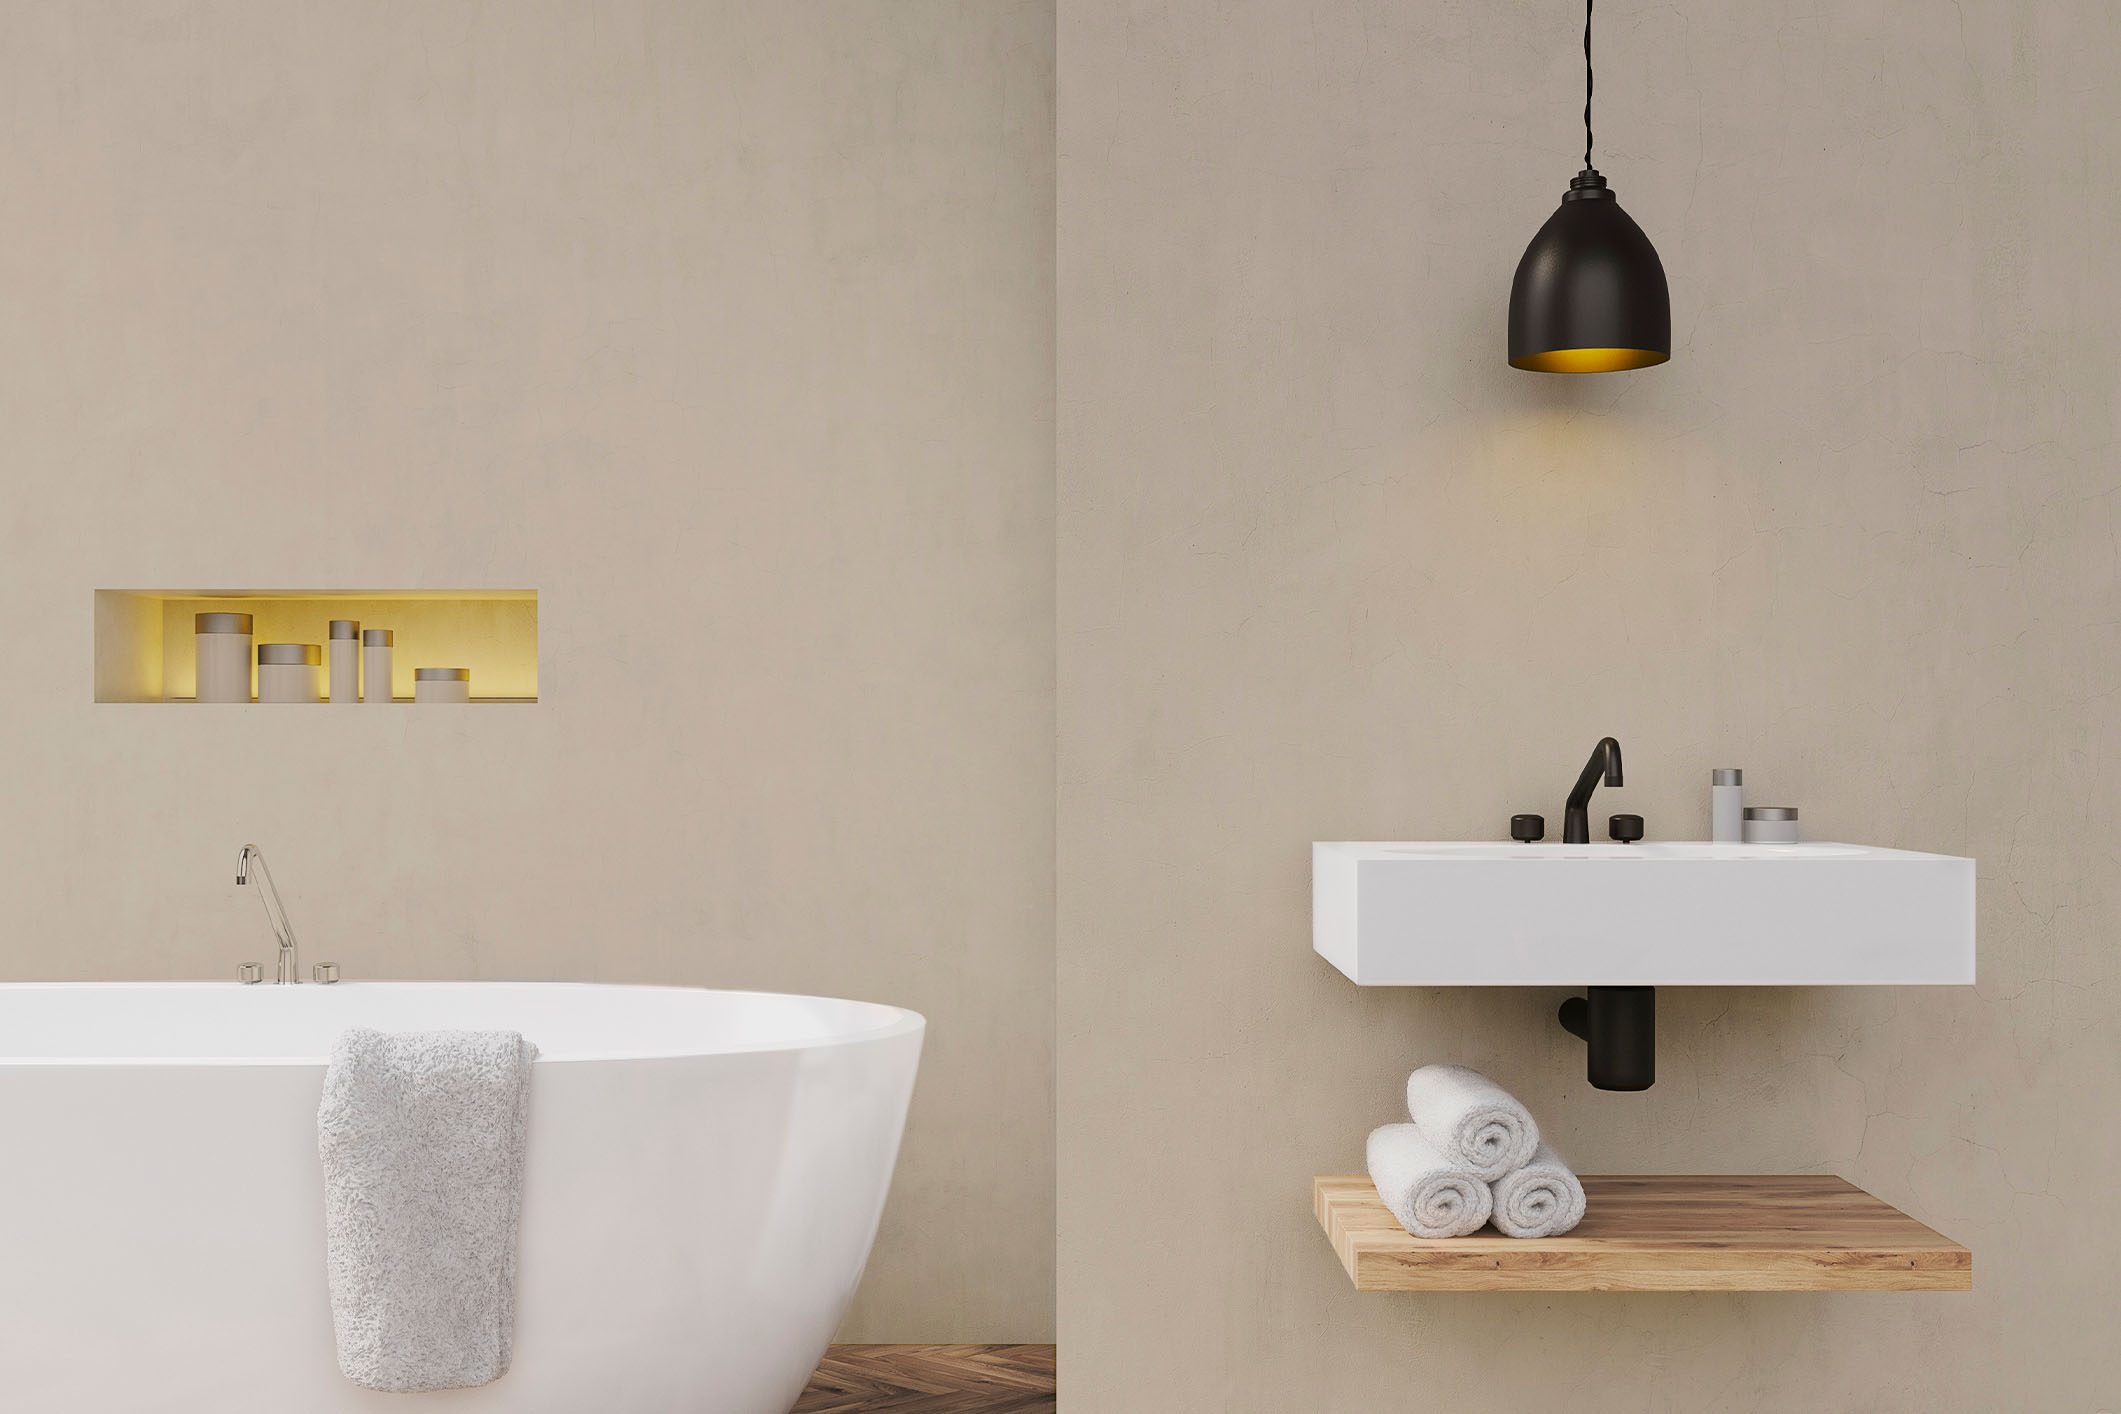 Baño con microcemento color gris en la pared